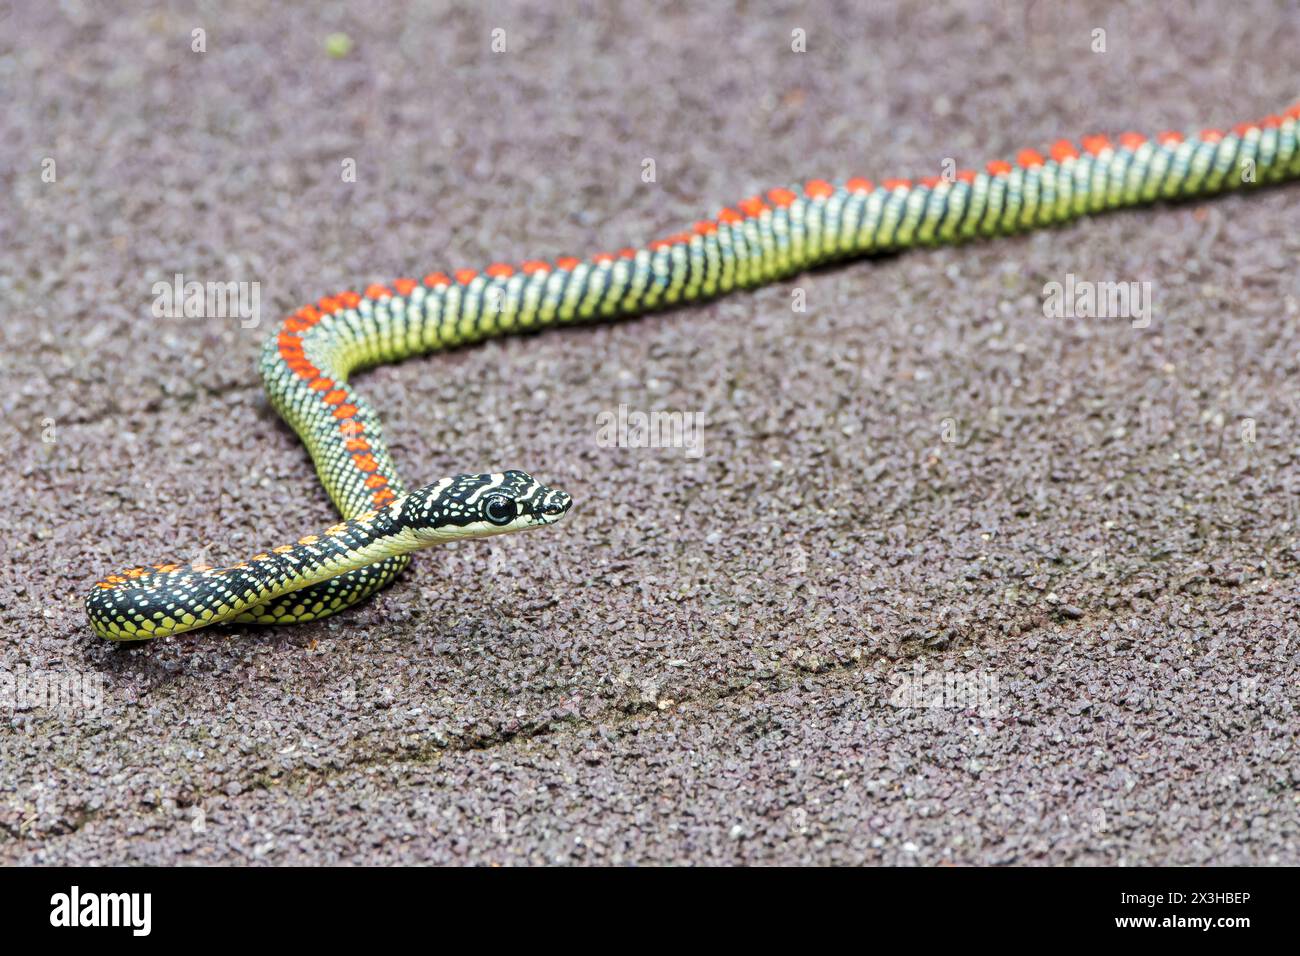 Serpent volant paradis ou serpent arbre paradis, Chrysopelea paradisi, adulte seul sur la promenade, Sungei Buloh, Singpore Banque D'Images